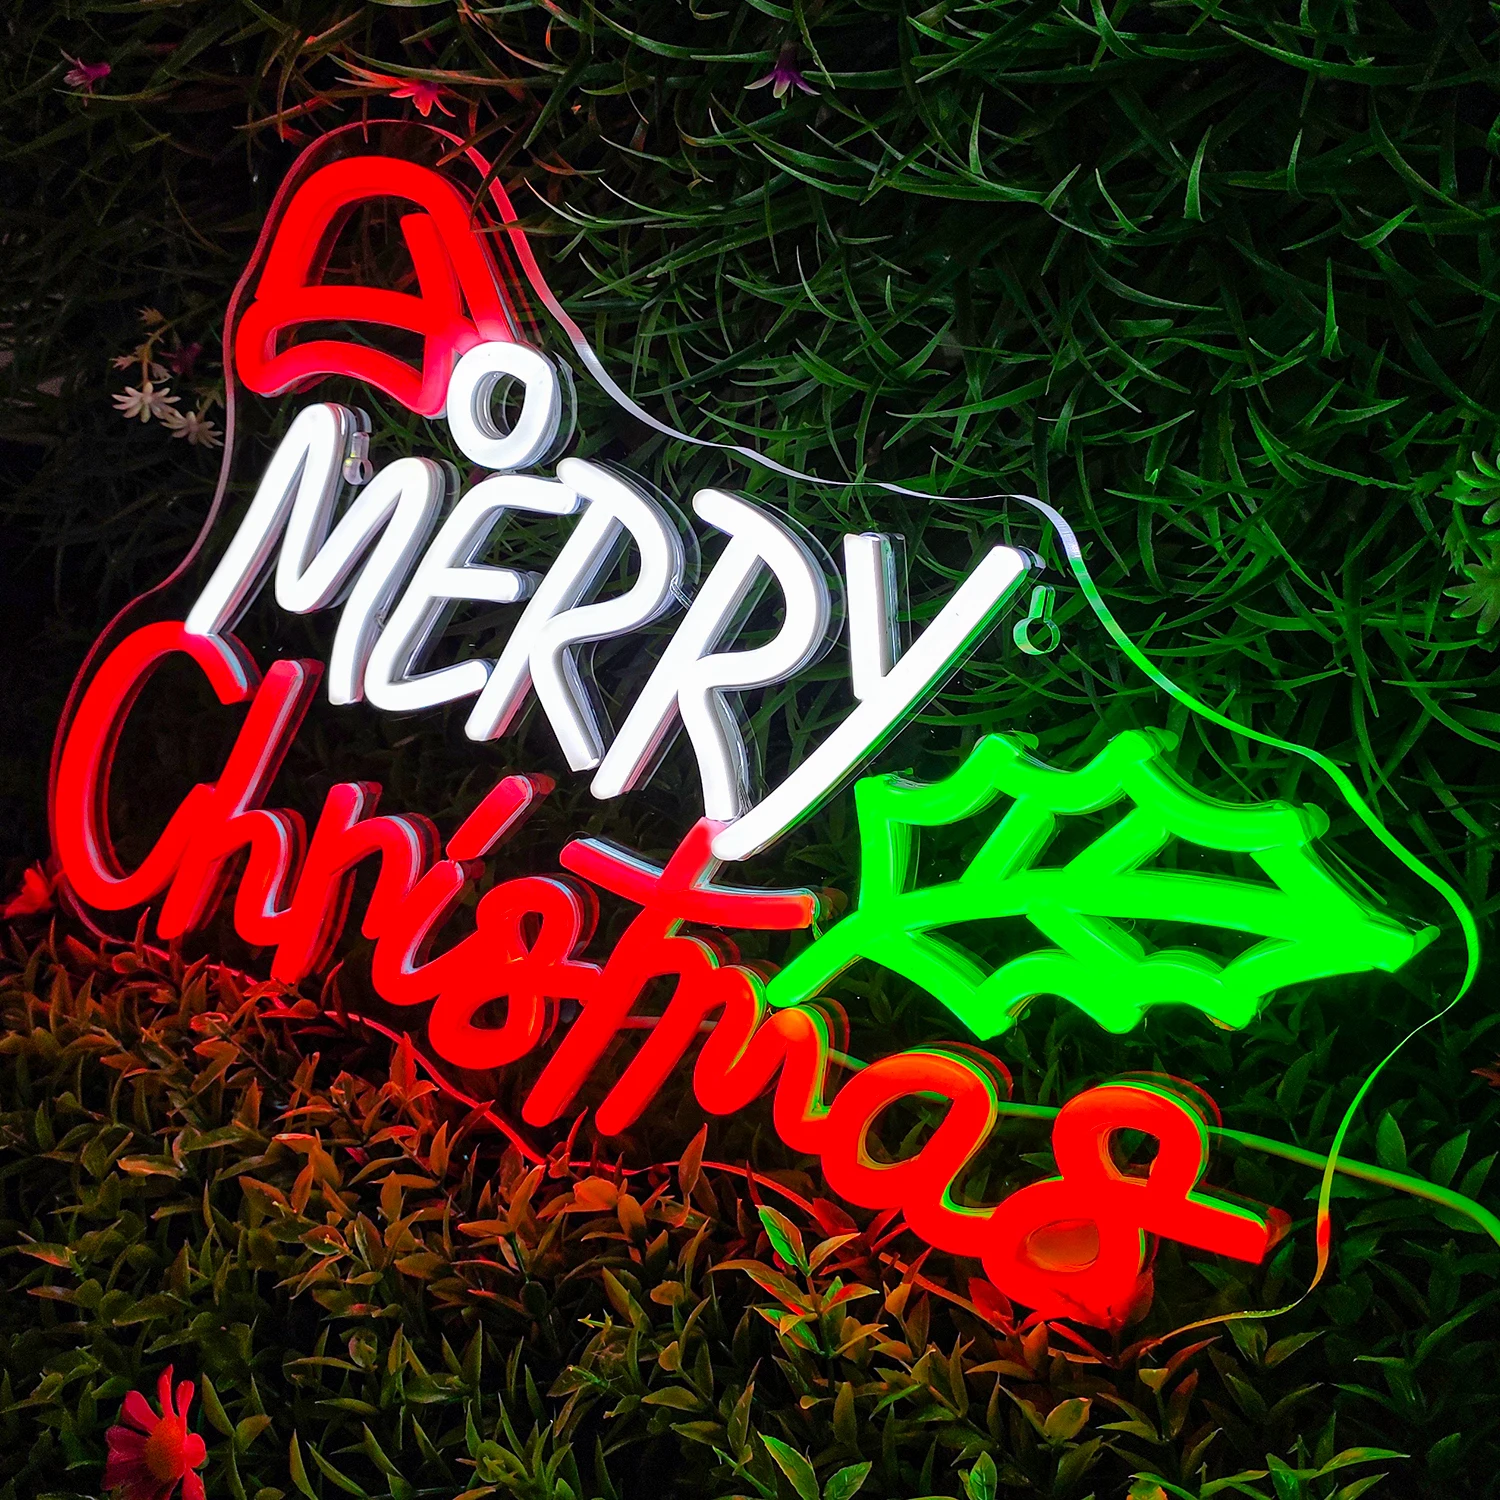 Merry Christmas Neon LED Sign Lights, Decoração